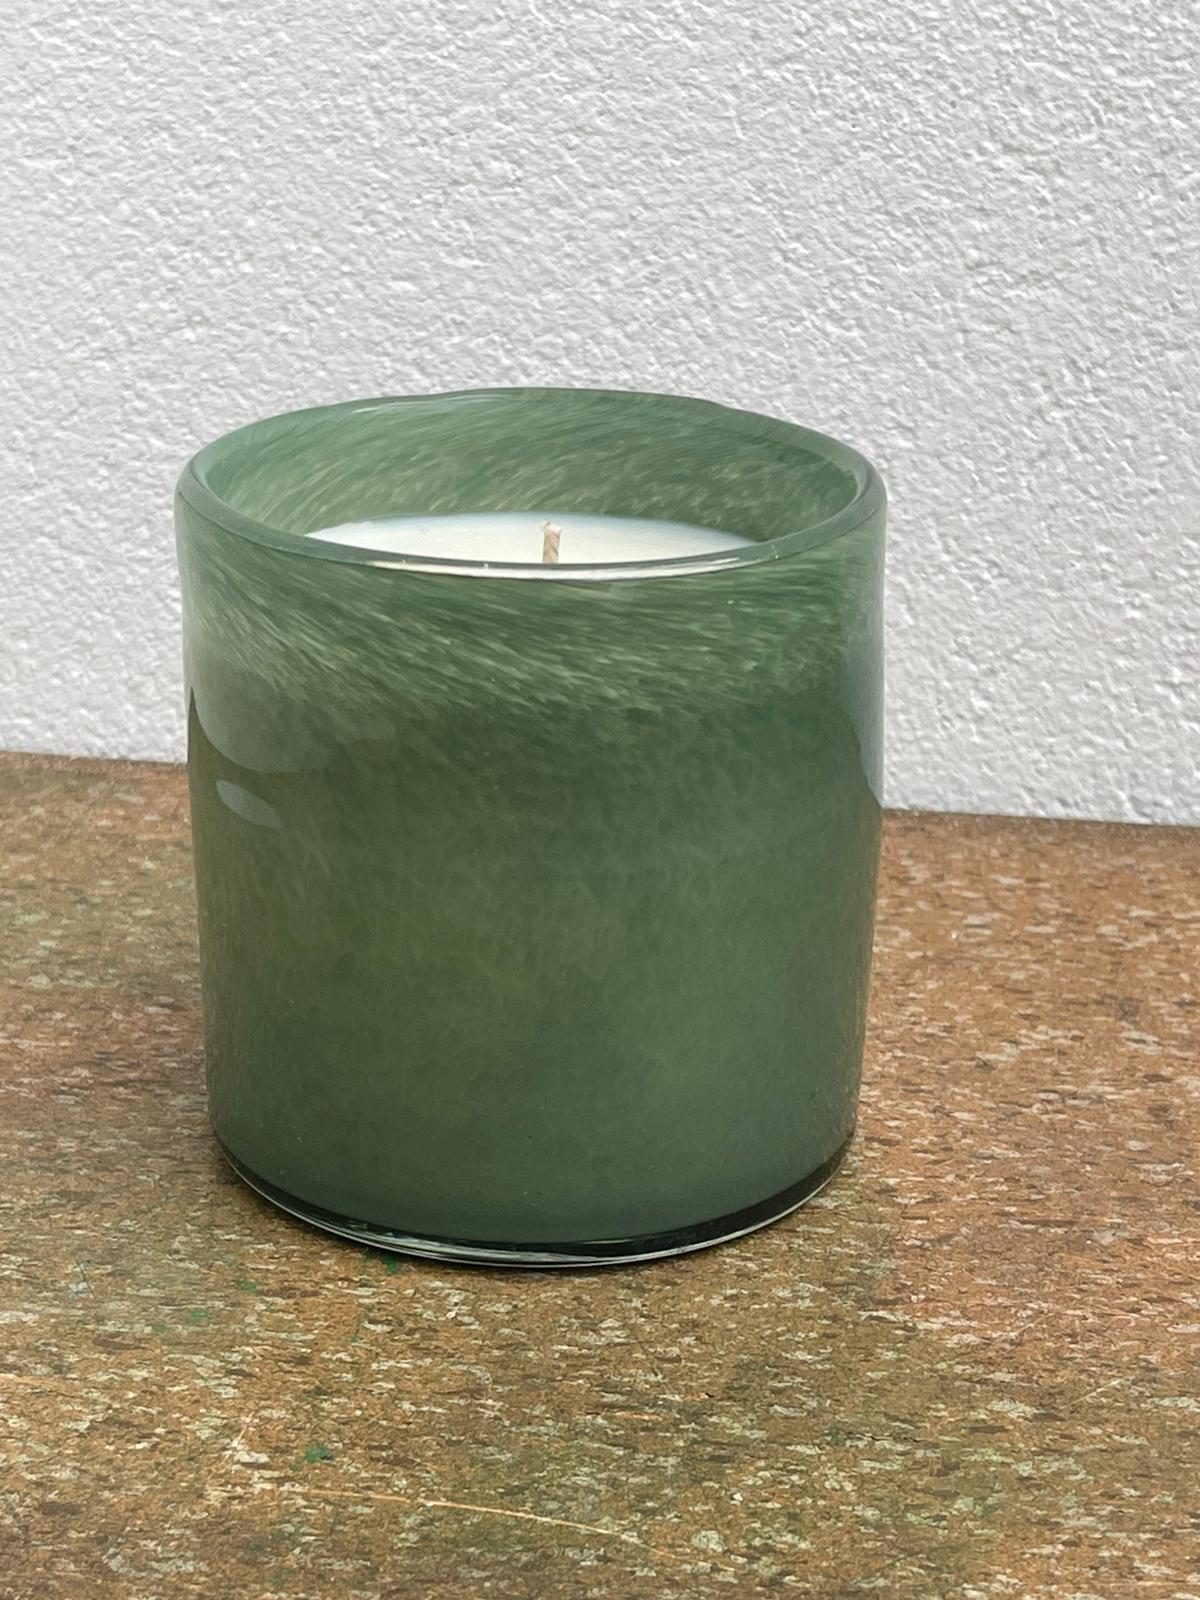 גינת תבלינים - נר בכלי זכוכית בניפוח ידני בצורת כוס צילינדר - ירוק אפרפר